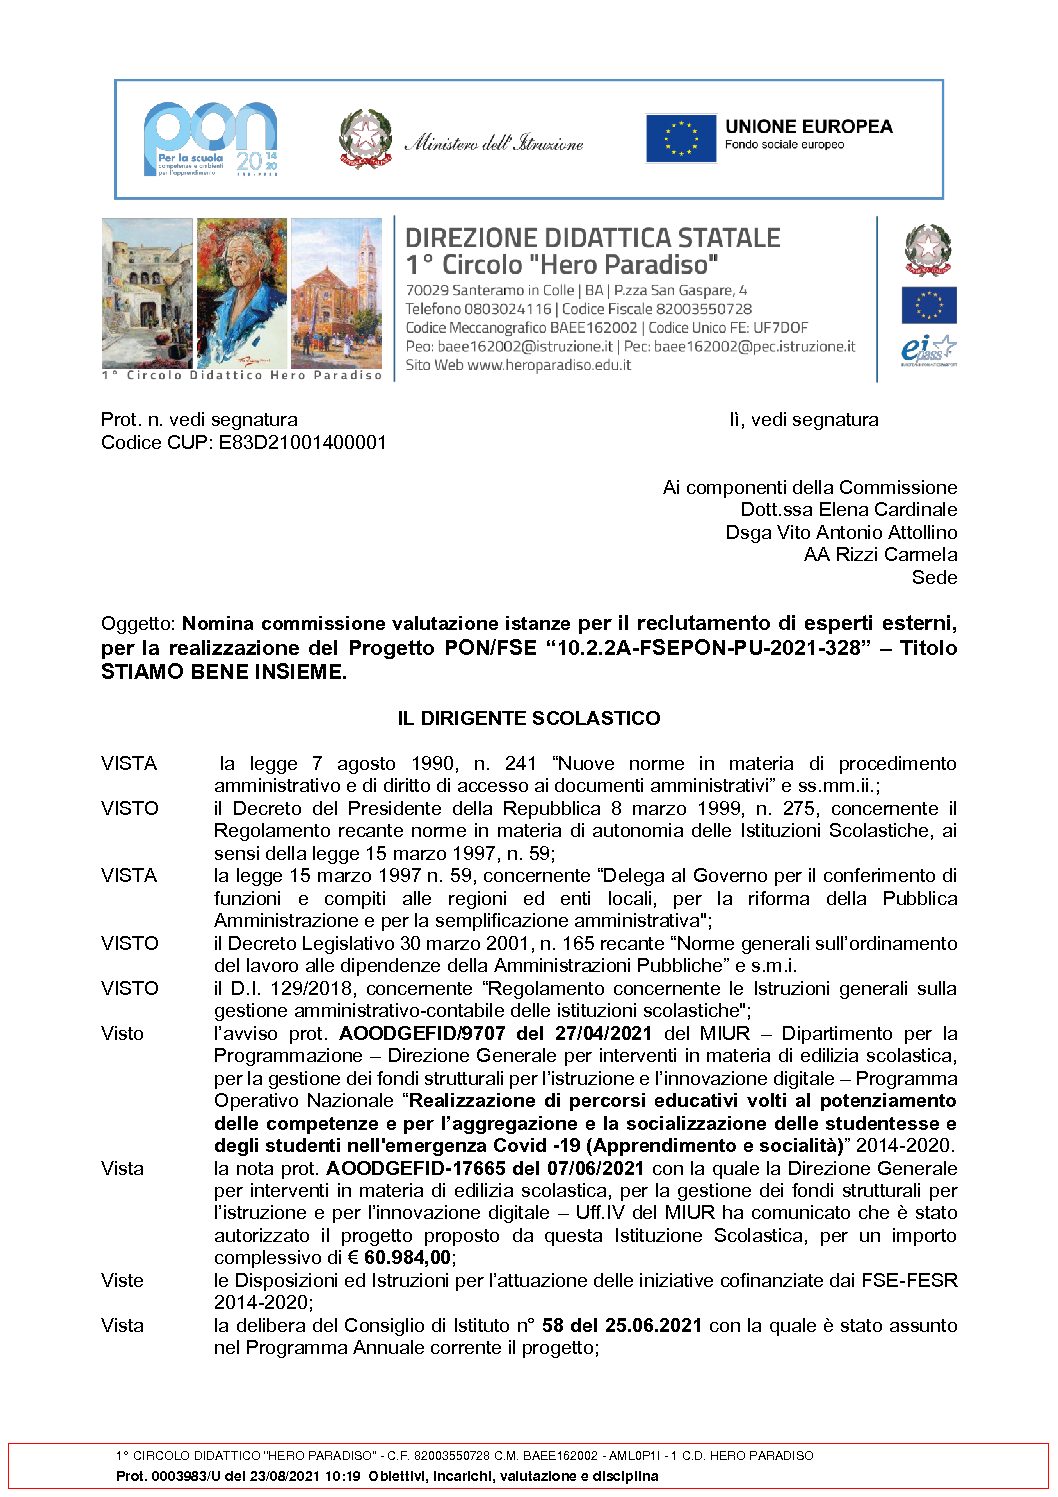 2._Nomina_commissione_di_valutazione_Esterni_2021-328.pdf.pades